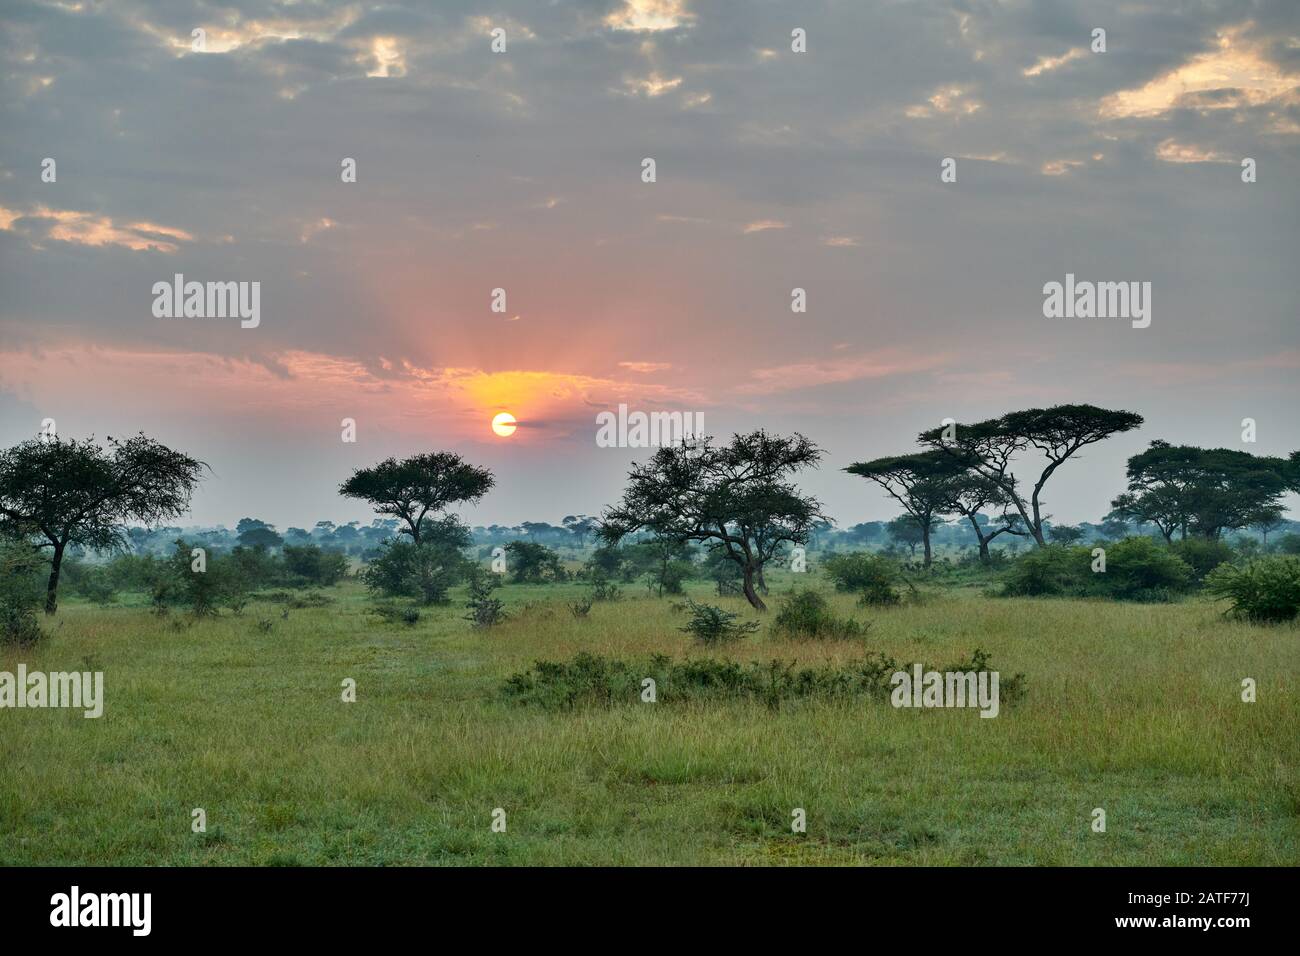 Paysage avec lever de soleil dans le Parc National du Serengeti, site du patrimoine mondial de l'UNESCO, Tanzanie, Afrique Banque D'Images